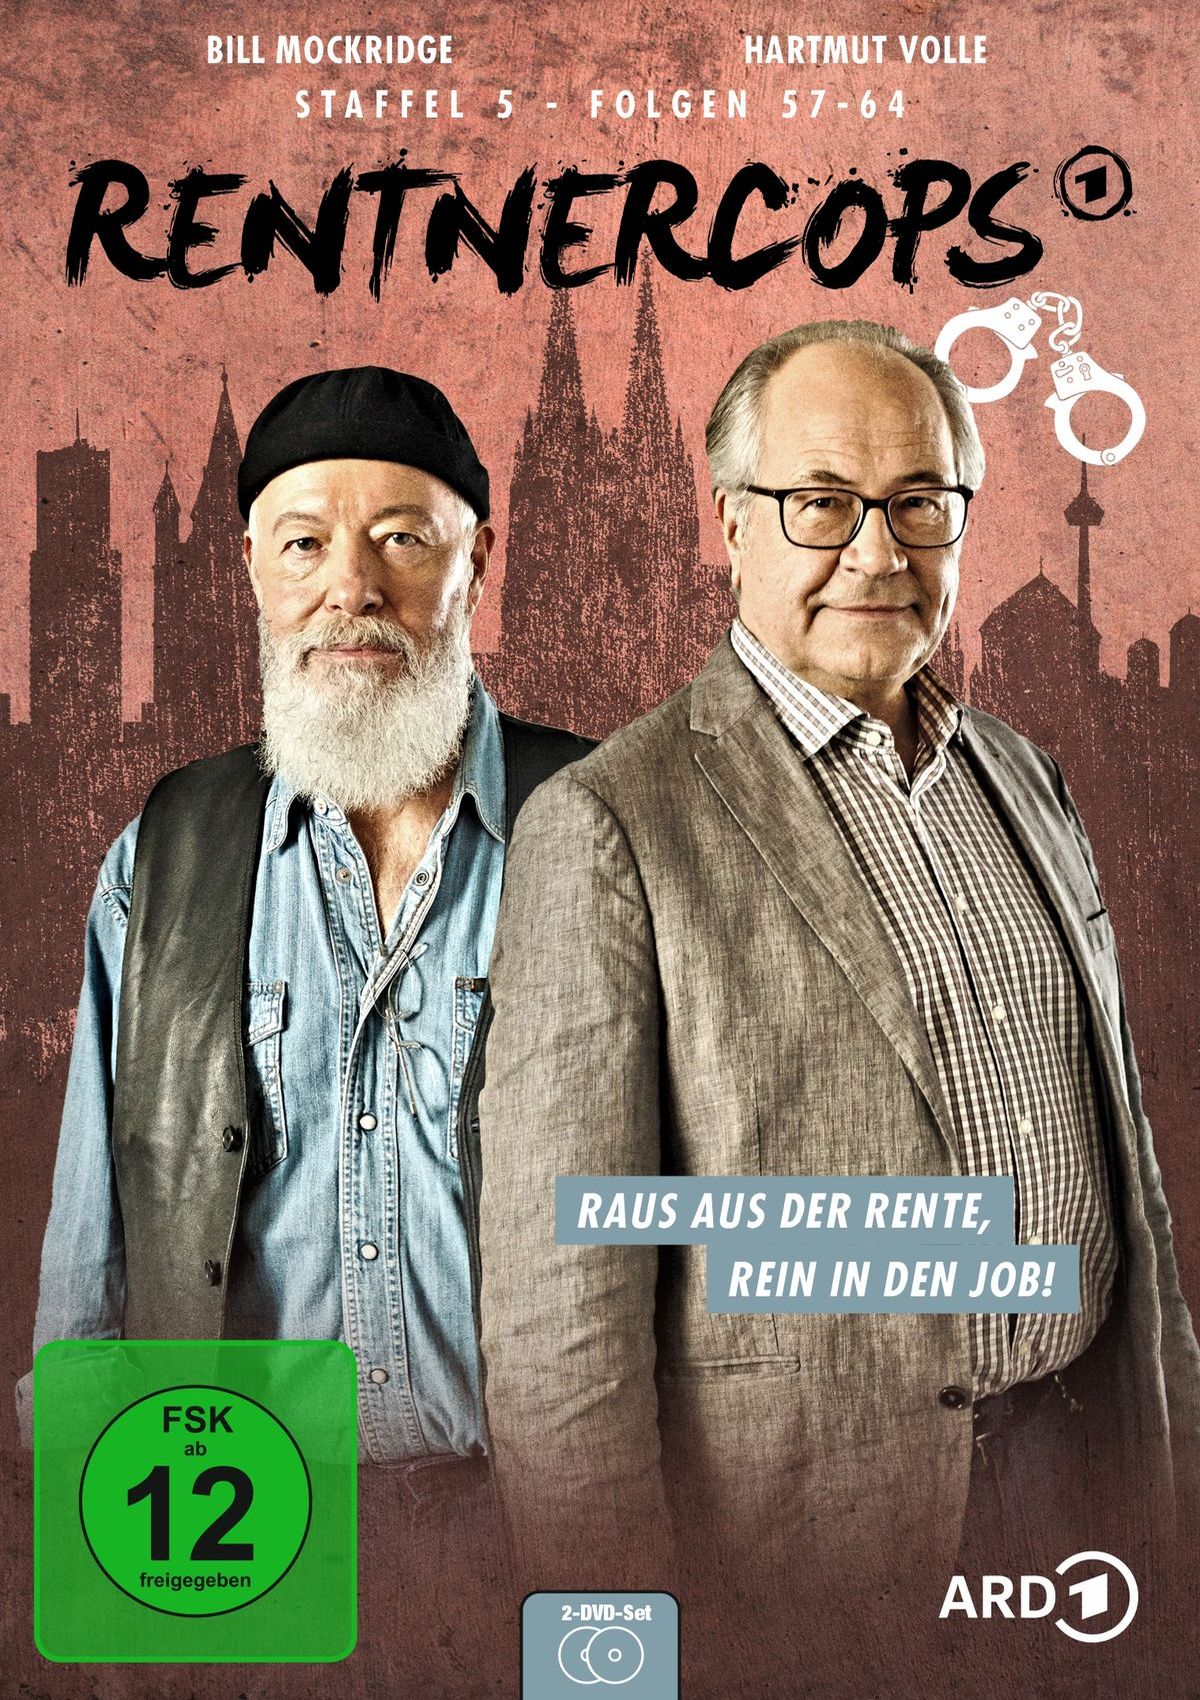 Rentnercops - Staffel 5 ab 25. März als DVD und digital erhältlich